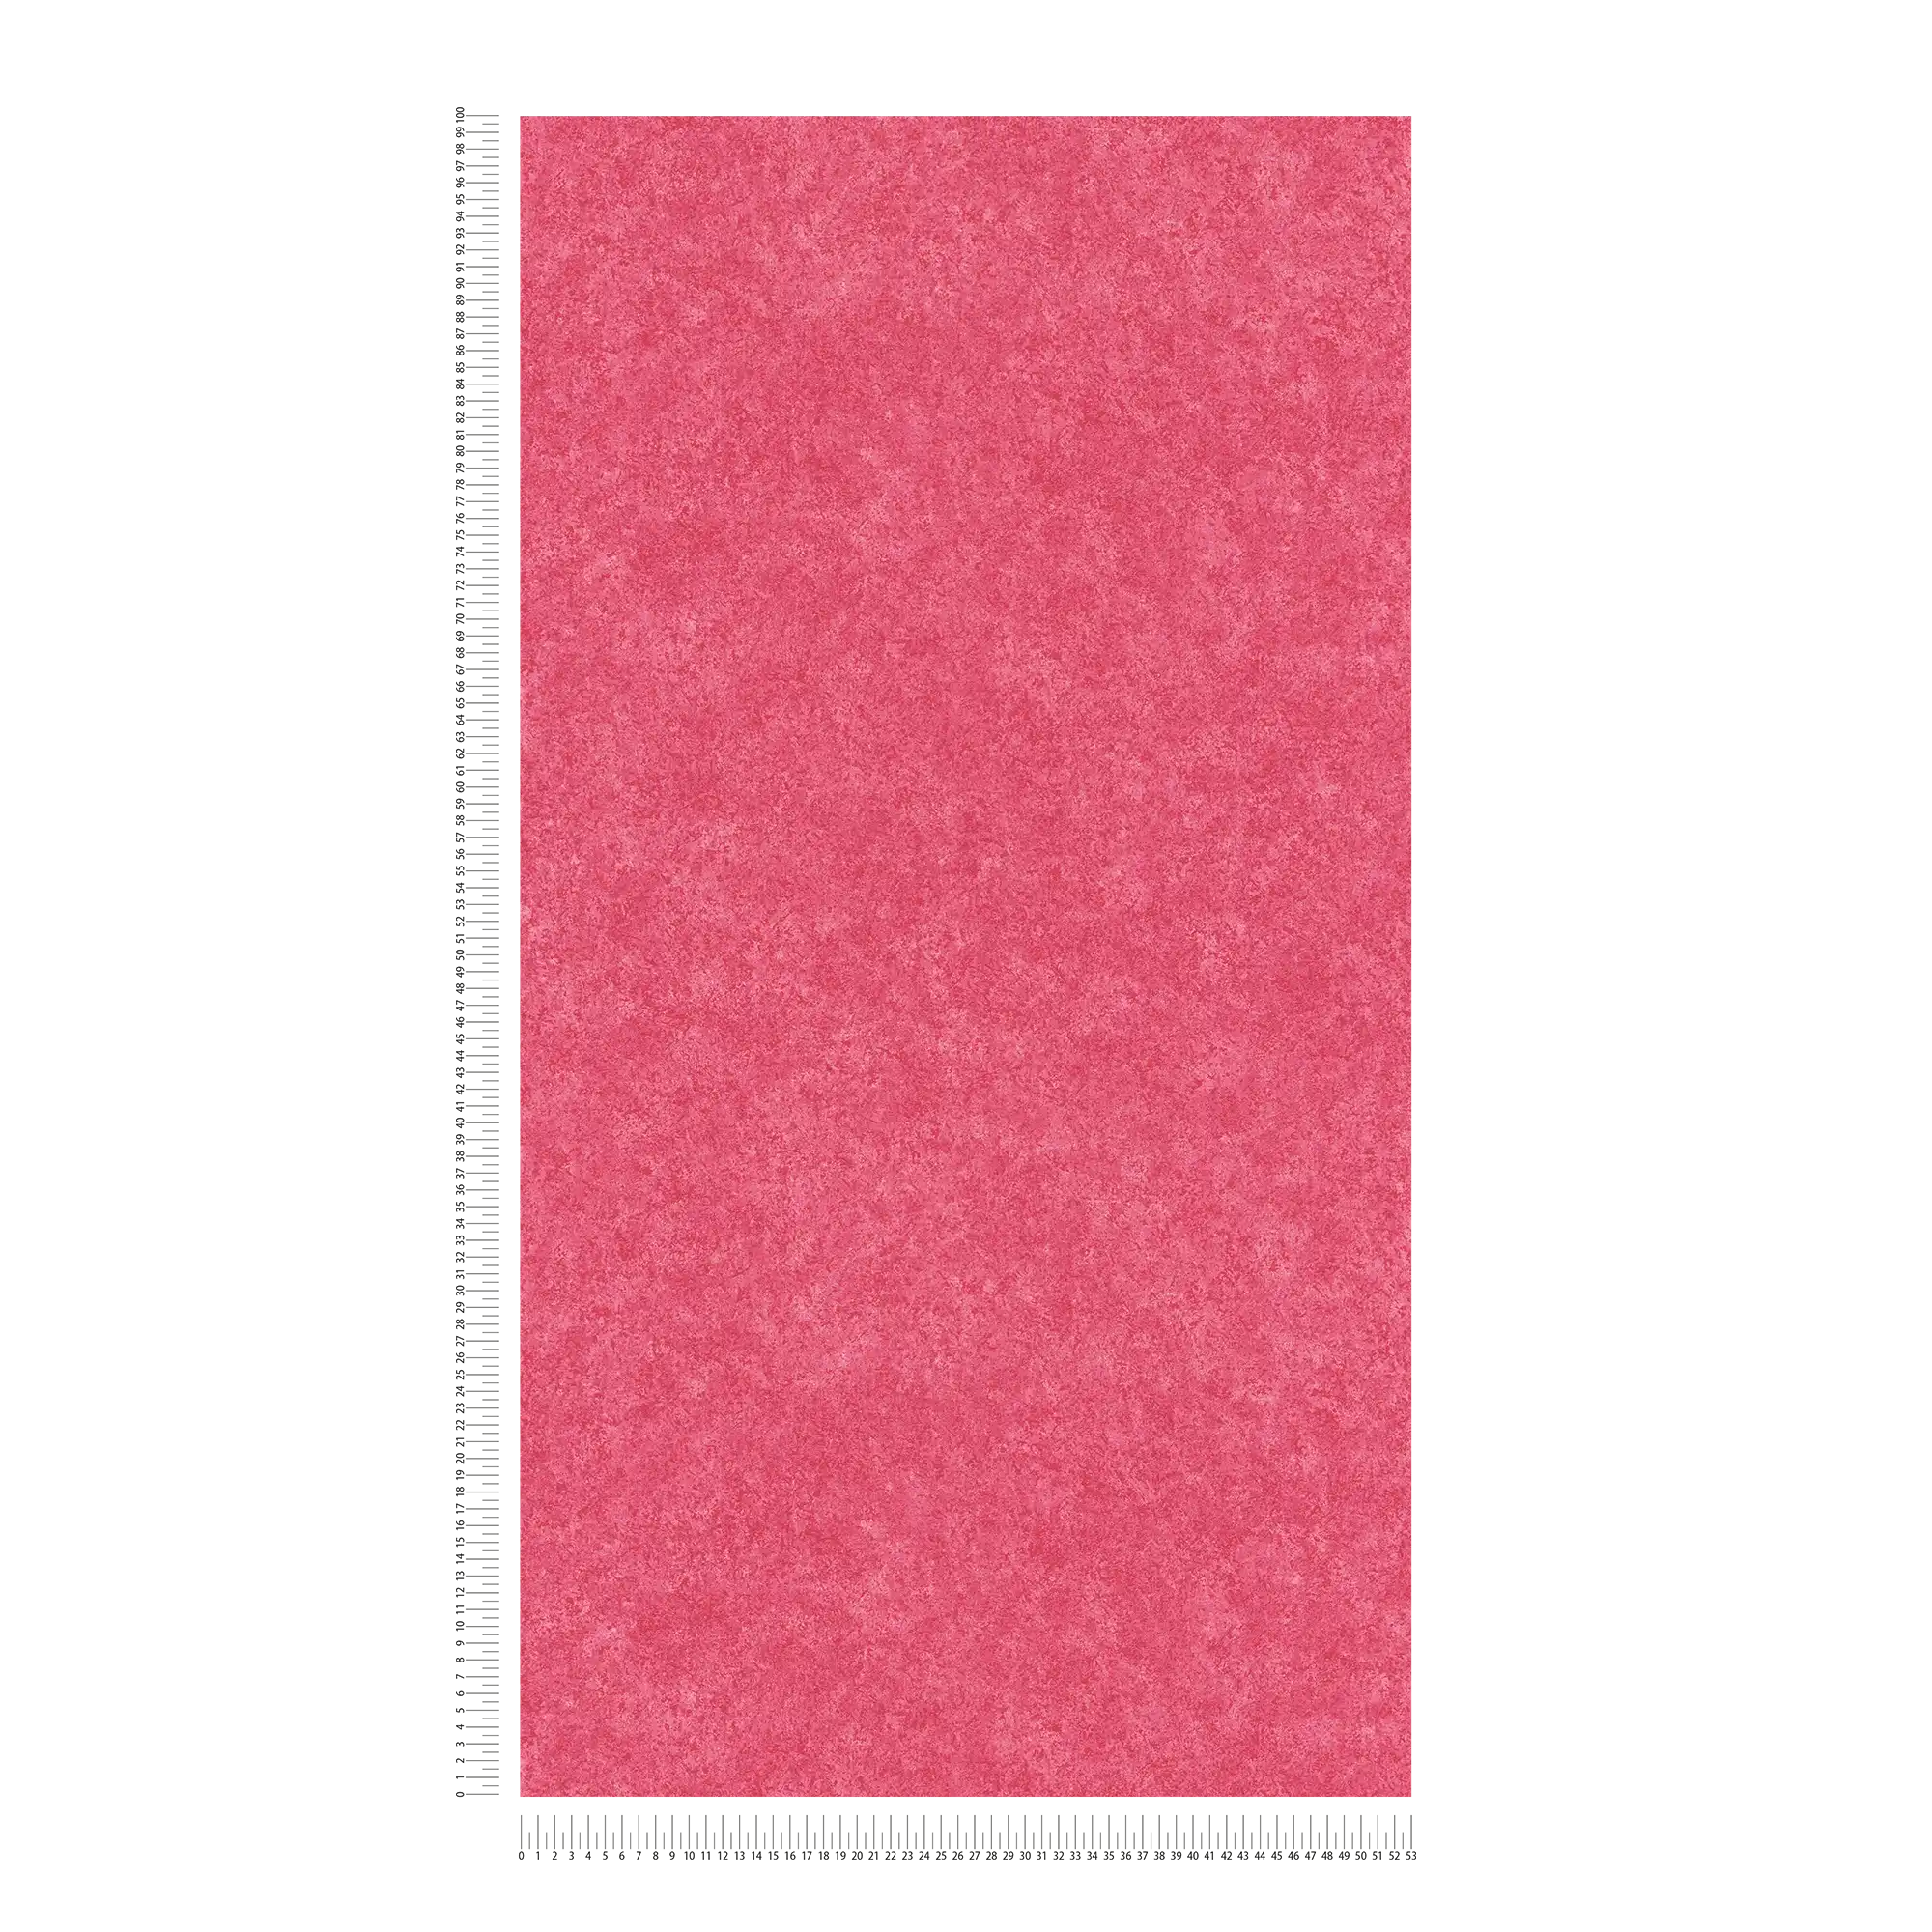             Roze vliesbehang met gevlekte gipslook - rood
        